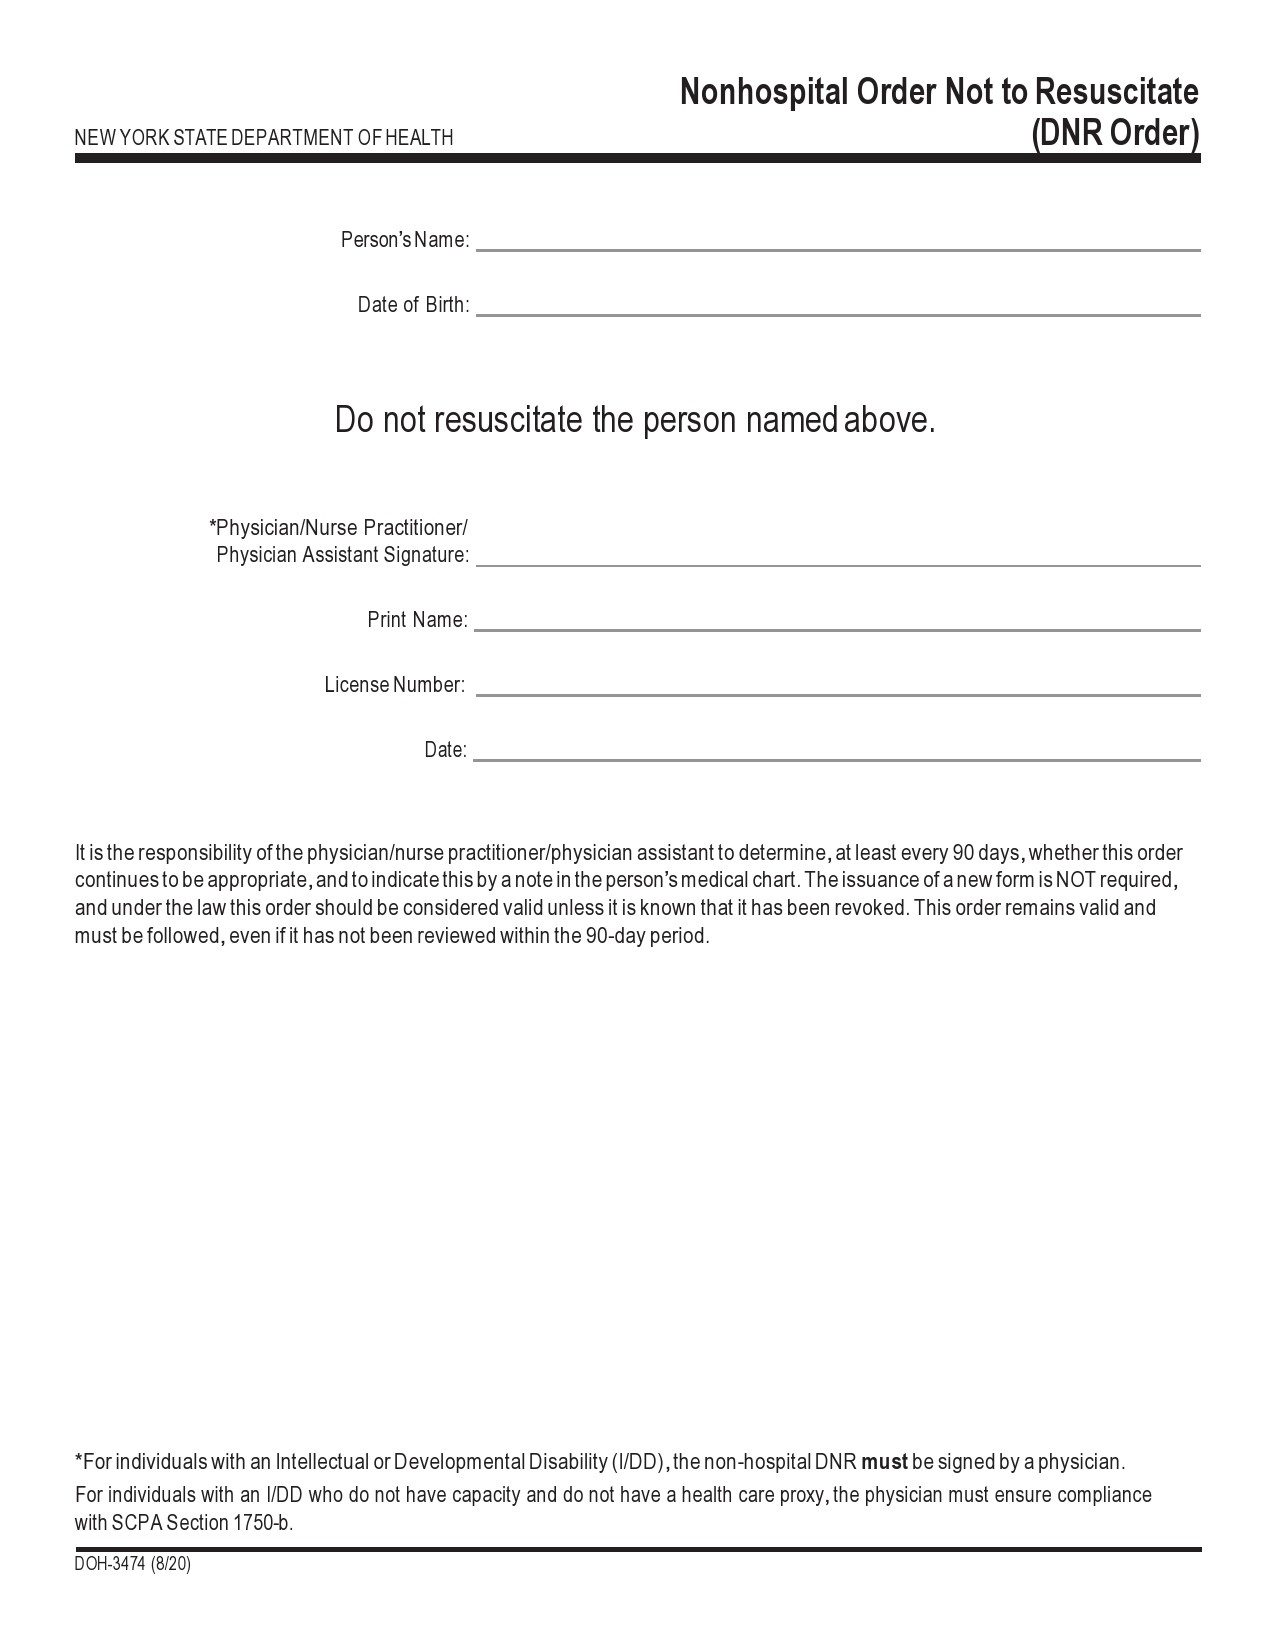 Free do not resuscitate form 17